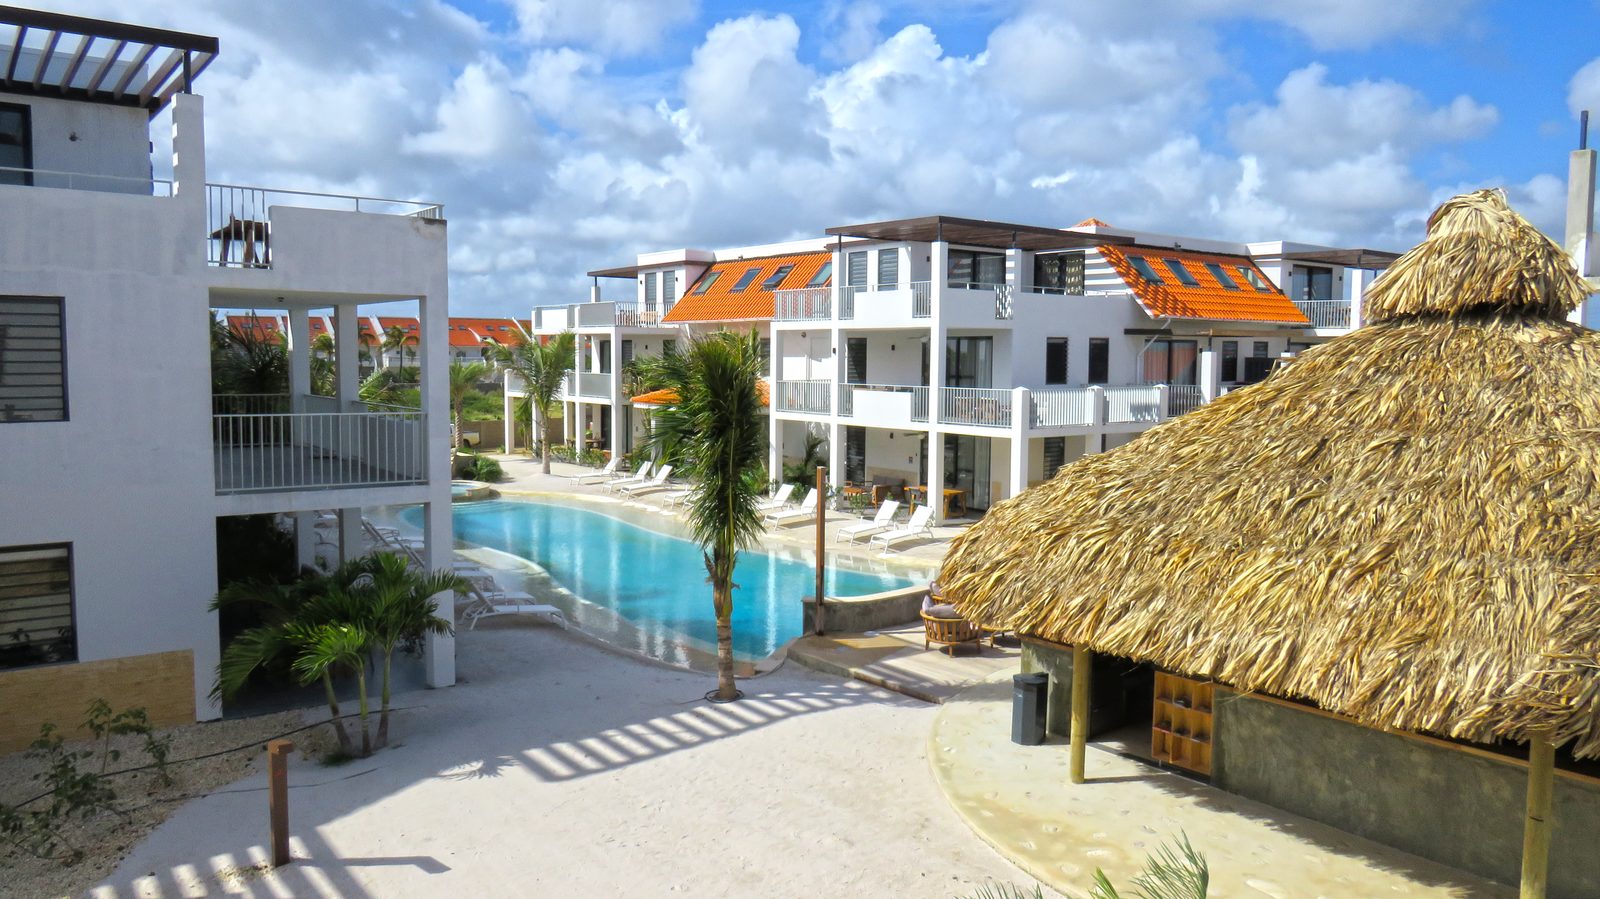 Op Bonaire kunt u verblijven op Resort Bonaire. Luxe appartementen die zijn voorzien van alle gemakken. Bekijk onze verkrijgbare accommodaties!